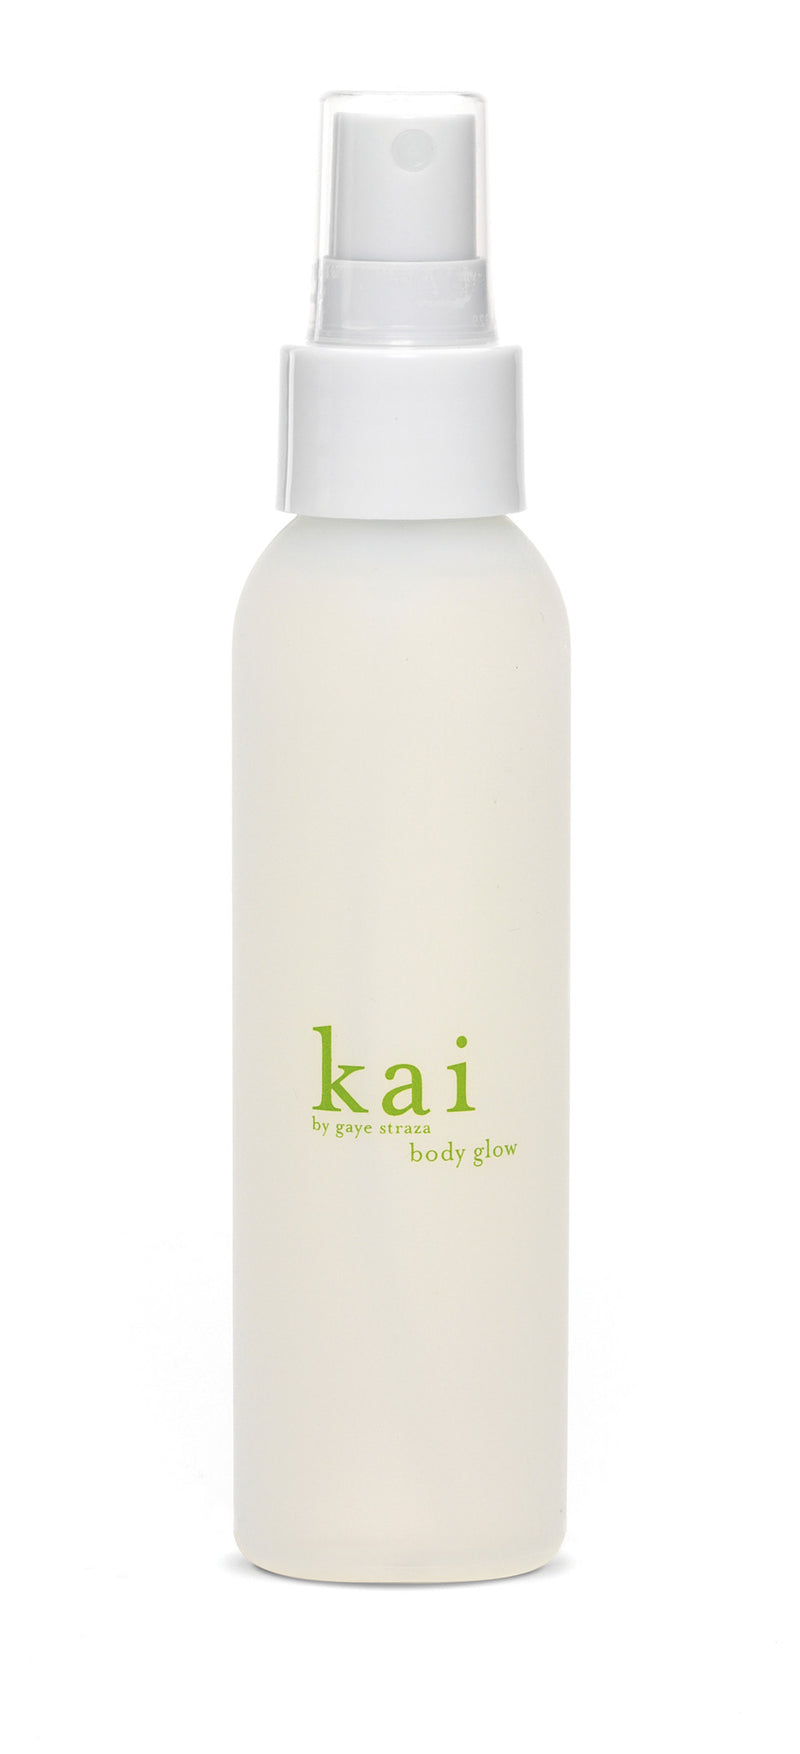 media image for kai body glow design by kai fragrance 1 293